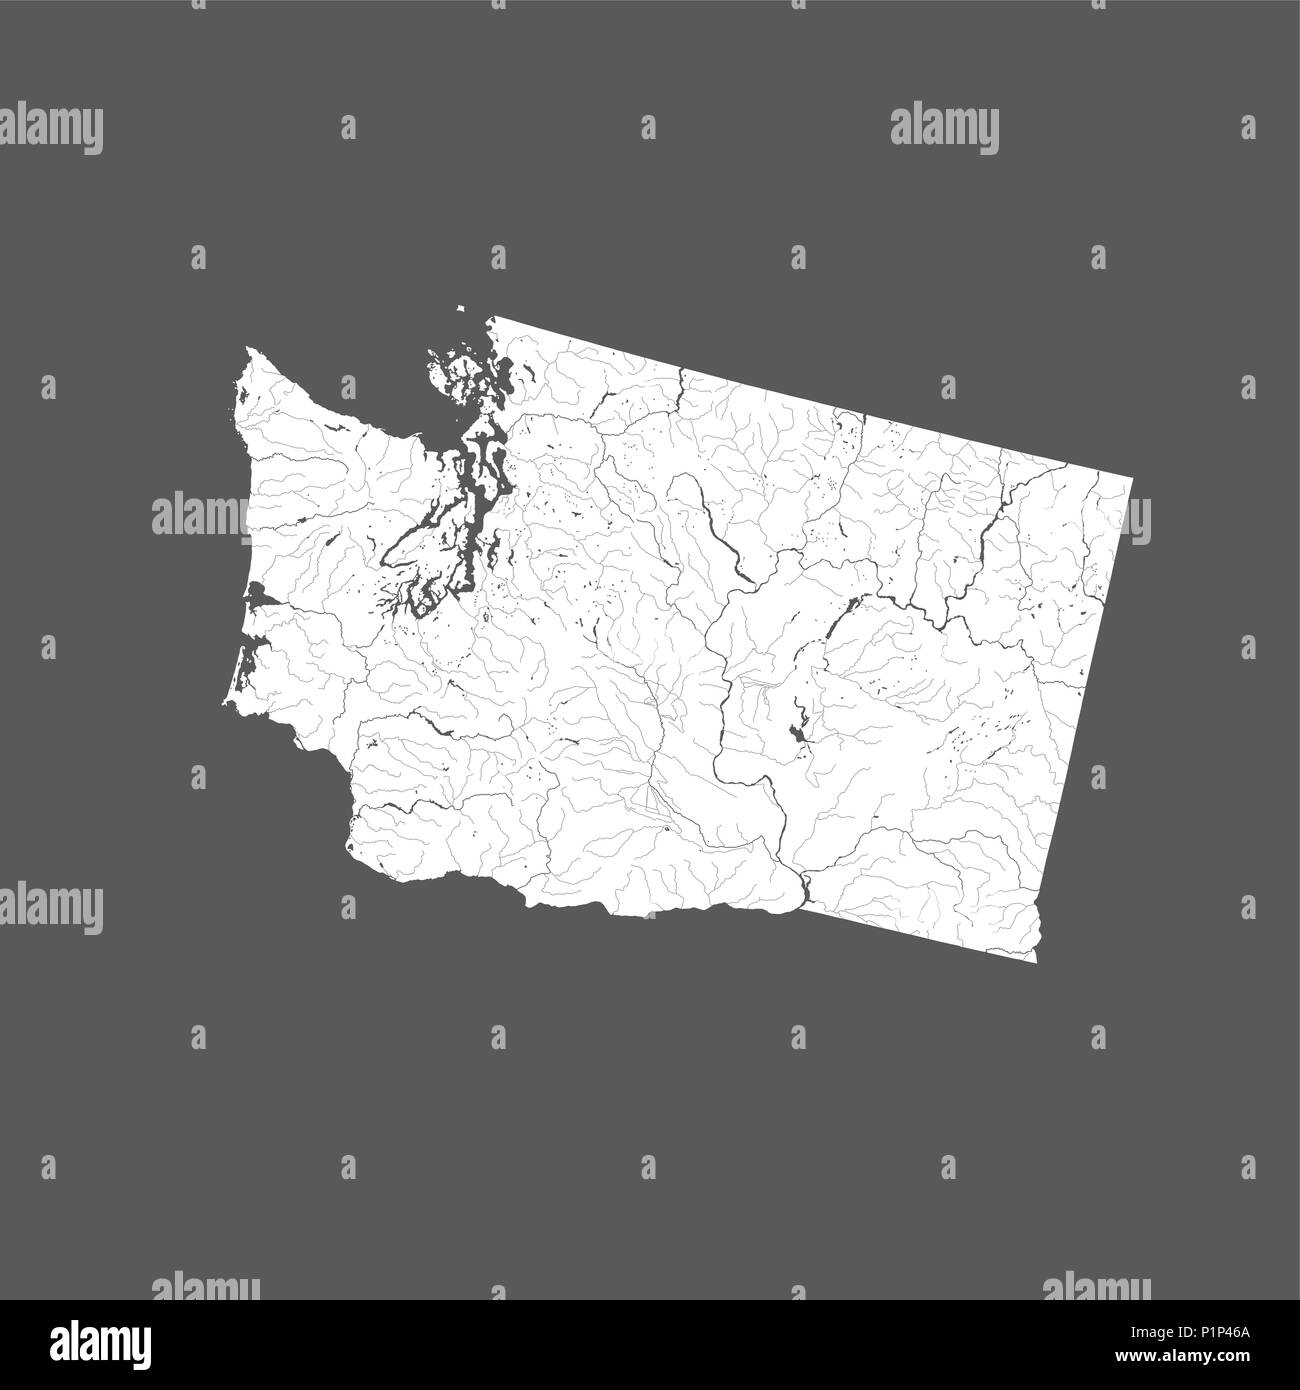 Der USA-Karte von Washington. Hand gemacht. Flüsse und Seen sind dargestellt. Bitte sehen Sie sich meine anderen Bilder von kartographischen Serie - sie sind alle sehr Deta Stock Vektor